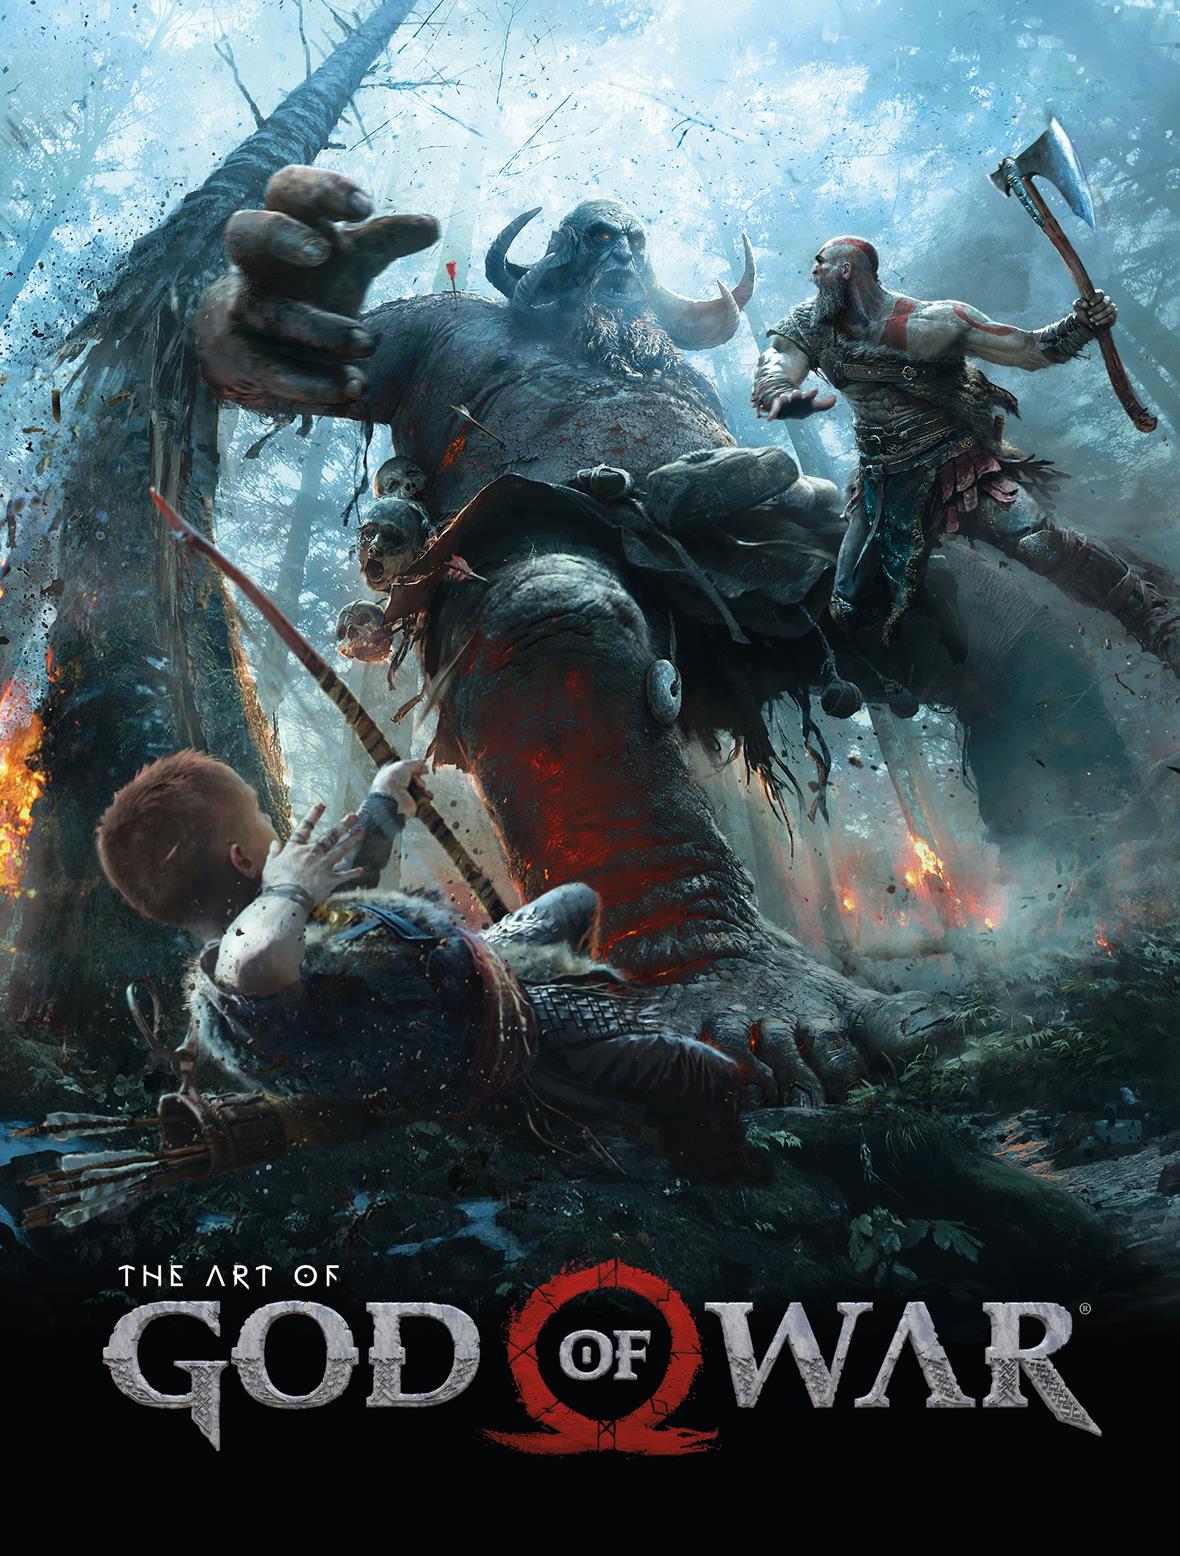 THE ART OF GOD OF WAR – First Comics News